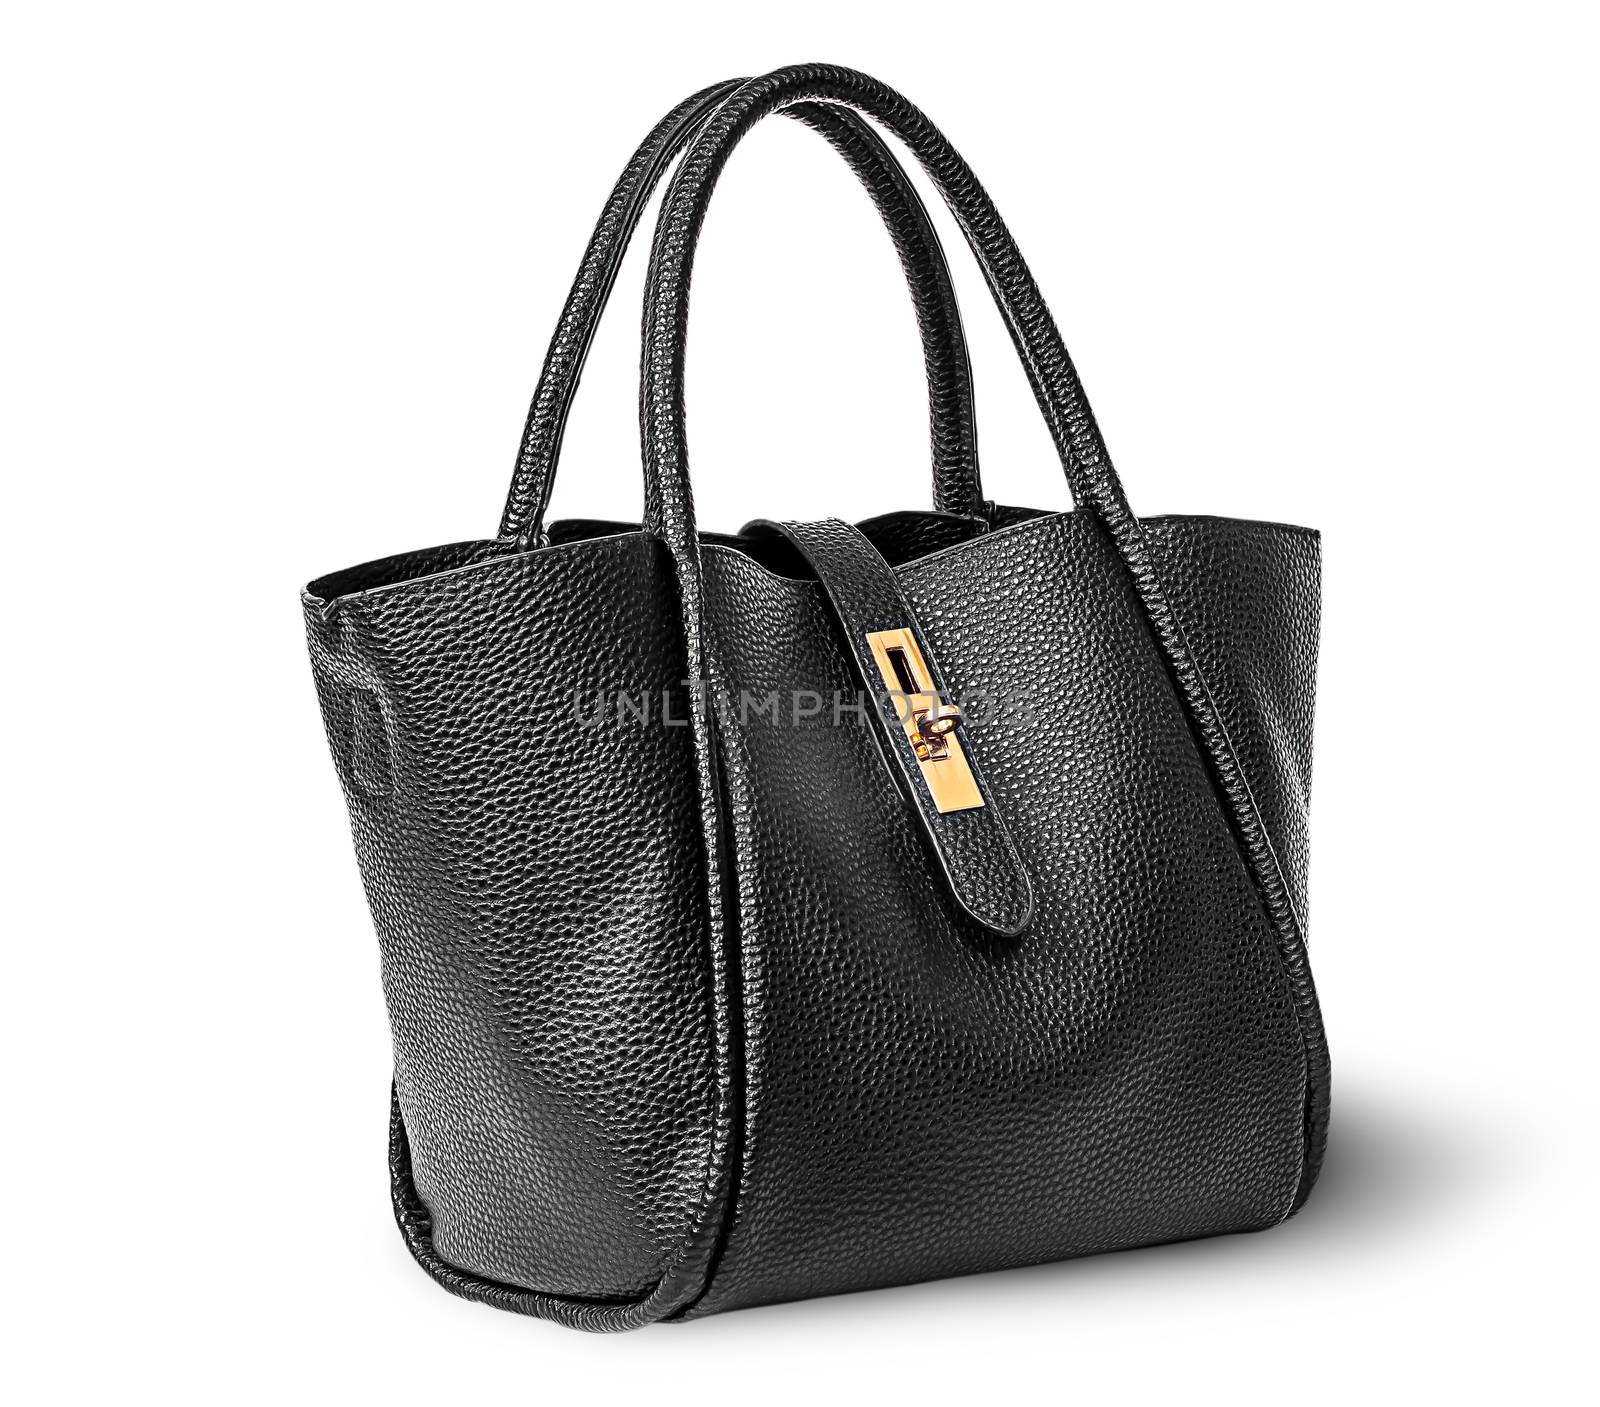 Black elegant leather ladies handbag rotated isolated on white background